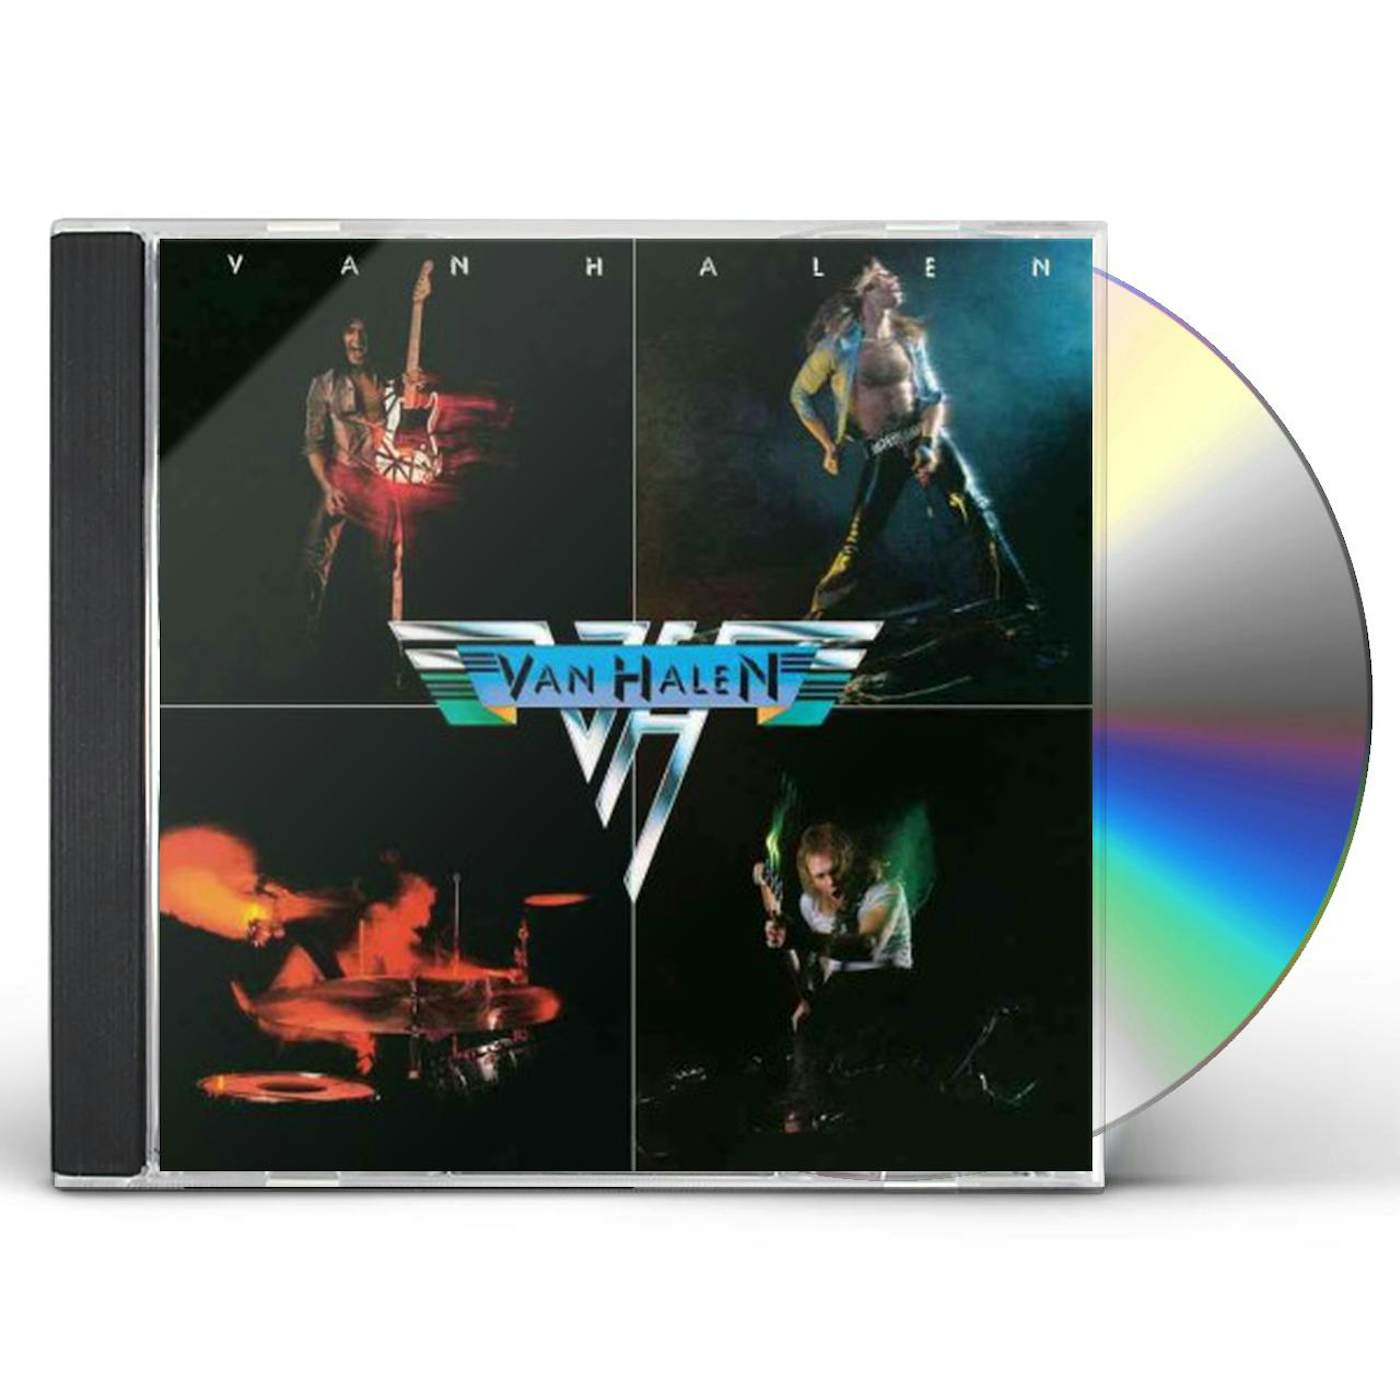 Van Halen THE COLLECTION (1978-1984) [6LP] (Vinyl)